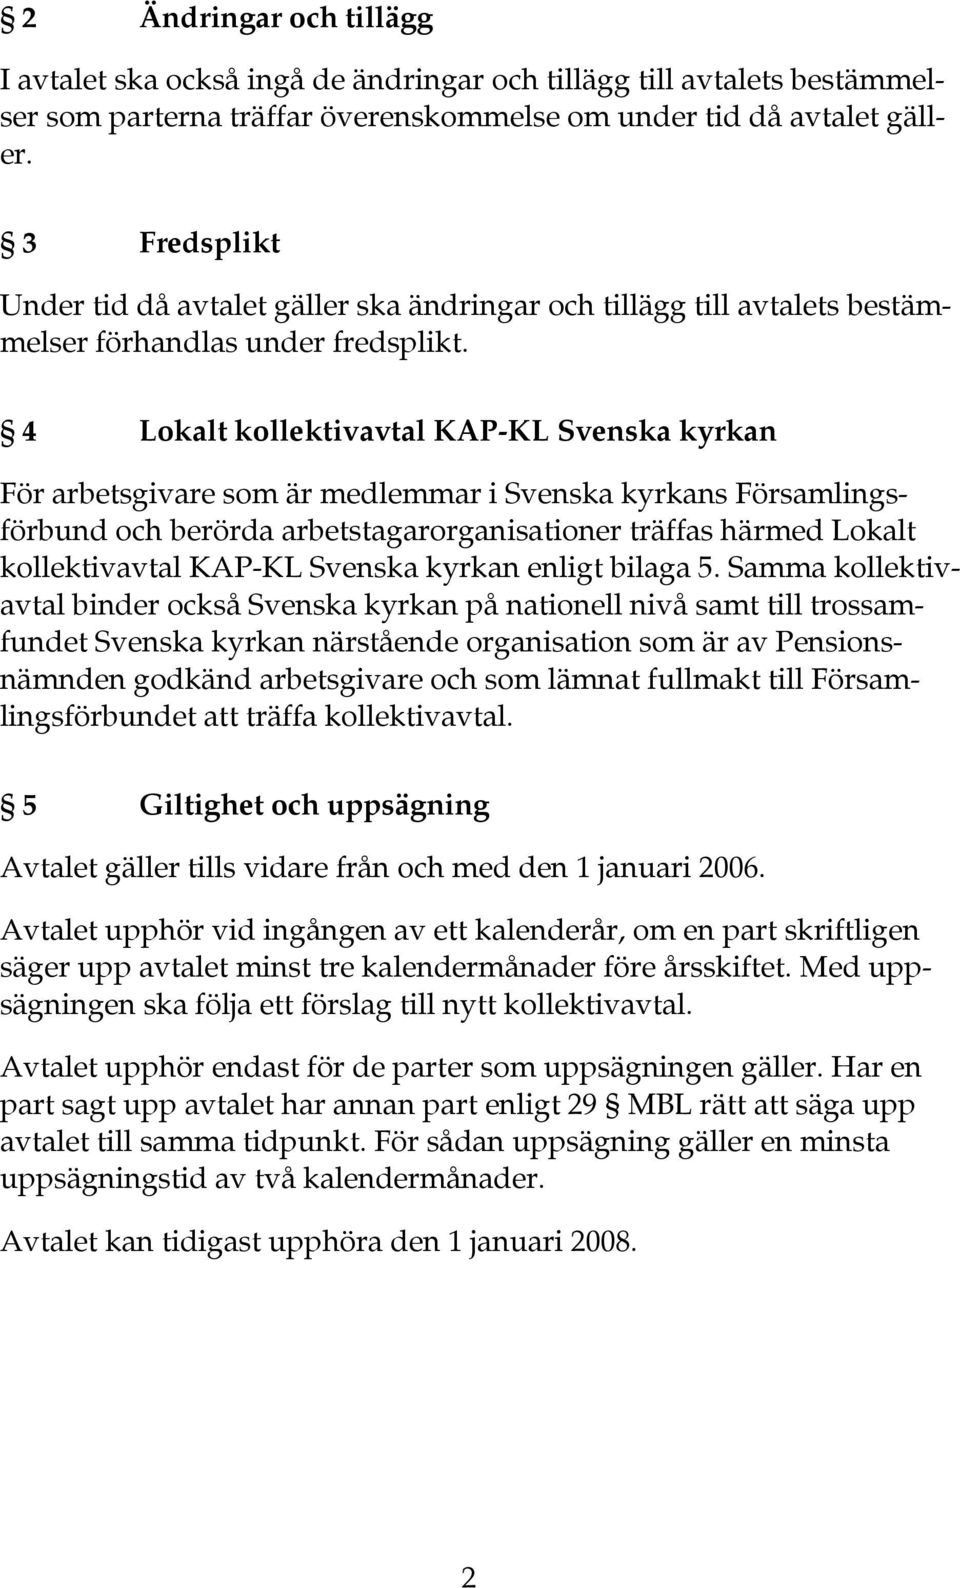 4 Lokalt kollektivavtal KAP-KL Svenska kyrkan För arbetsgivare som är medlemmar i Svenska kyrkans Församlingsförbund och berörda arbetstagarorganisationer träffas härmed Lokalt kollektivavtal KAP-KL